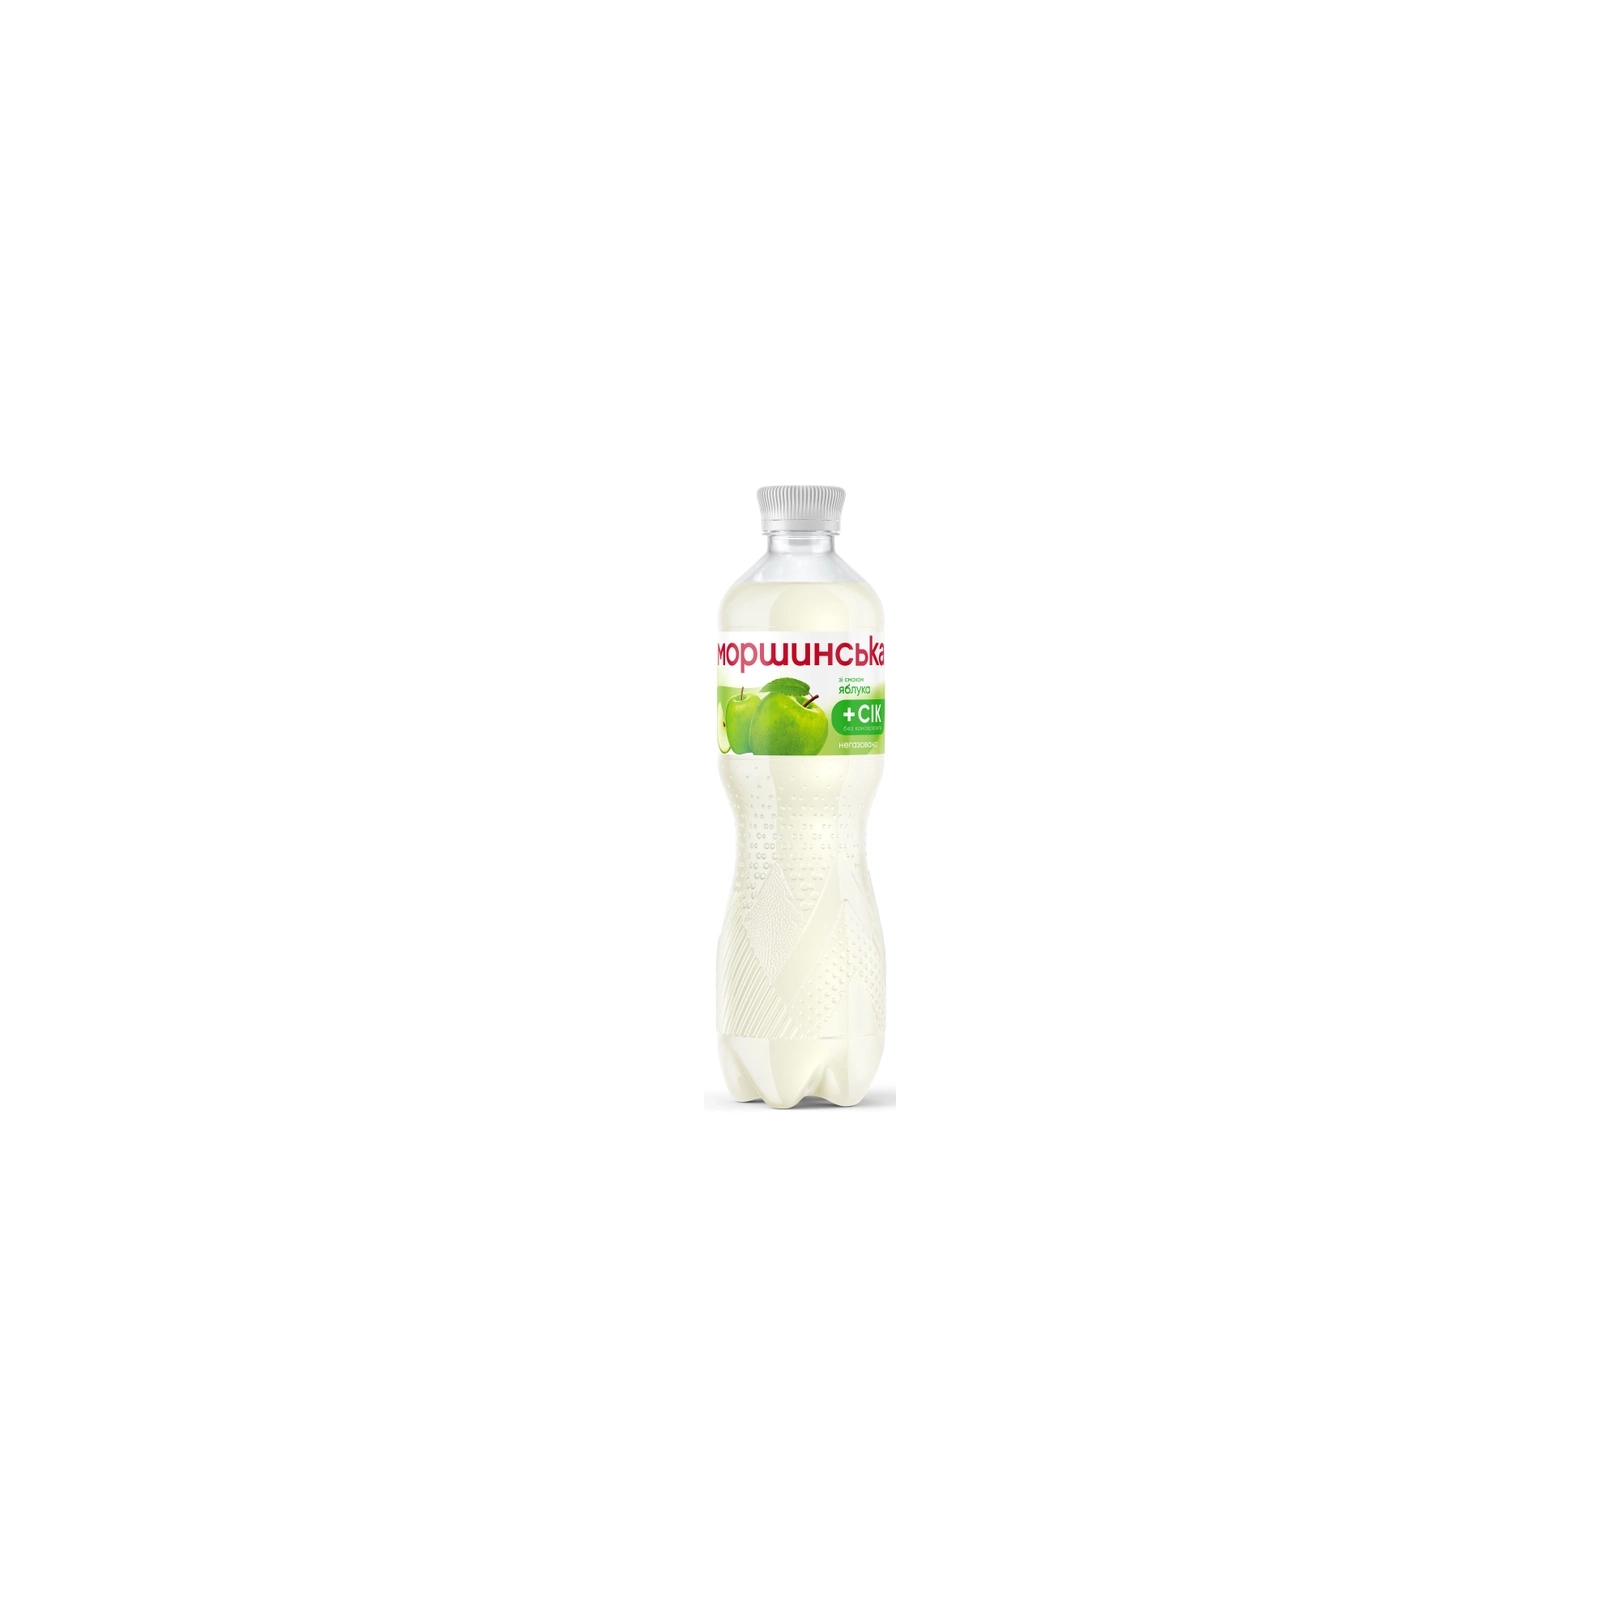 Напиток Моршинська сокосодержащий негазированный со вкусом яблоки 1.5 л (4820017002608)